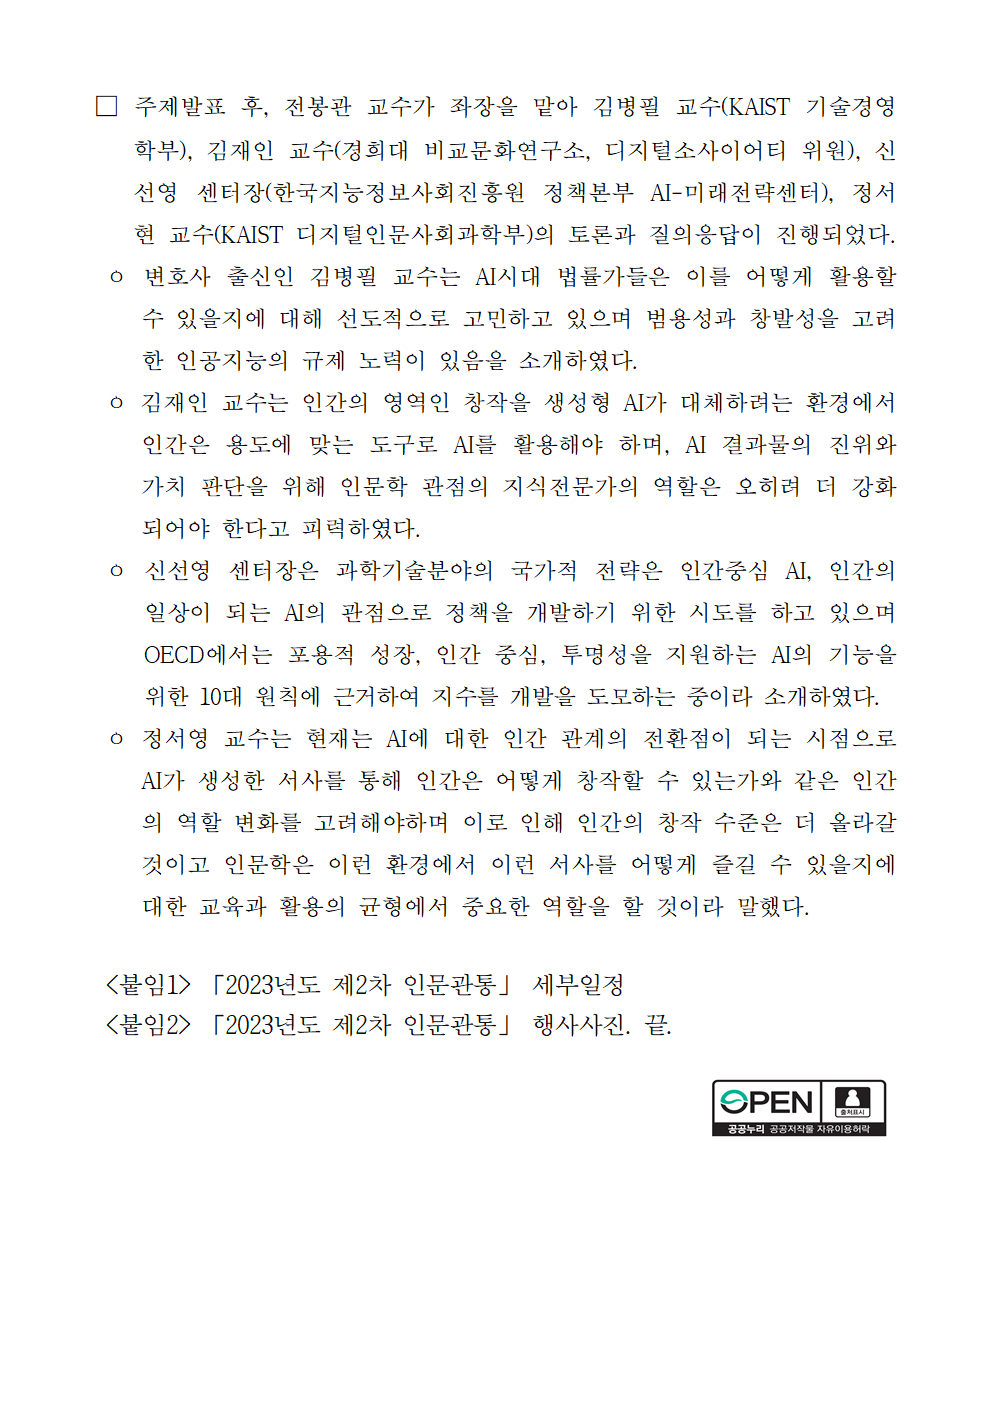 (3/5) 2023년도 제2차 인문관통 개최 보도자료 - 자세한 내용은 하단 참조